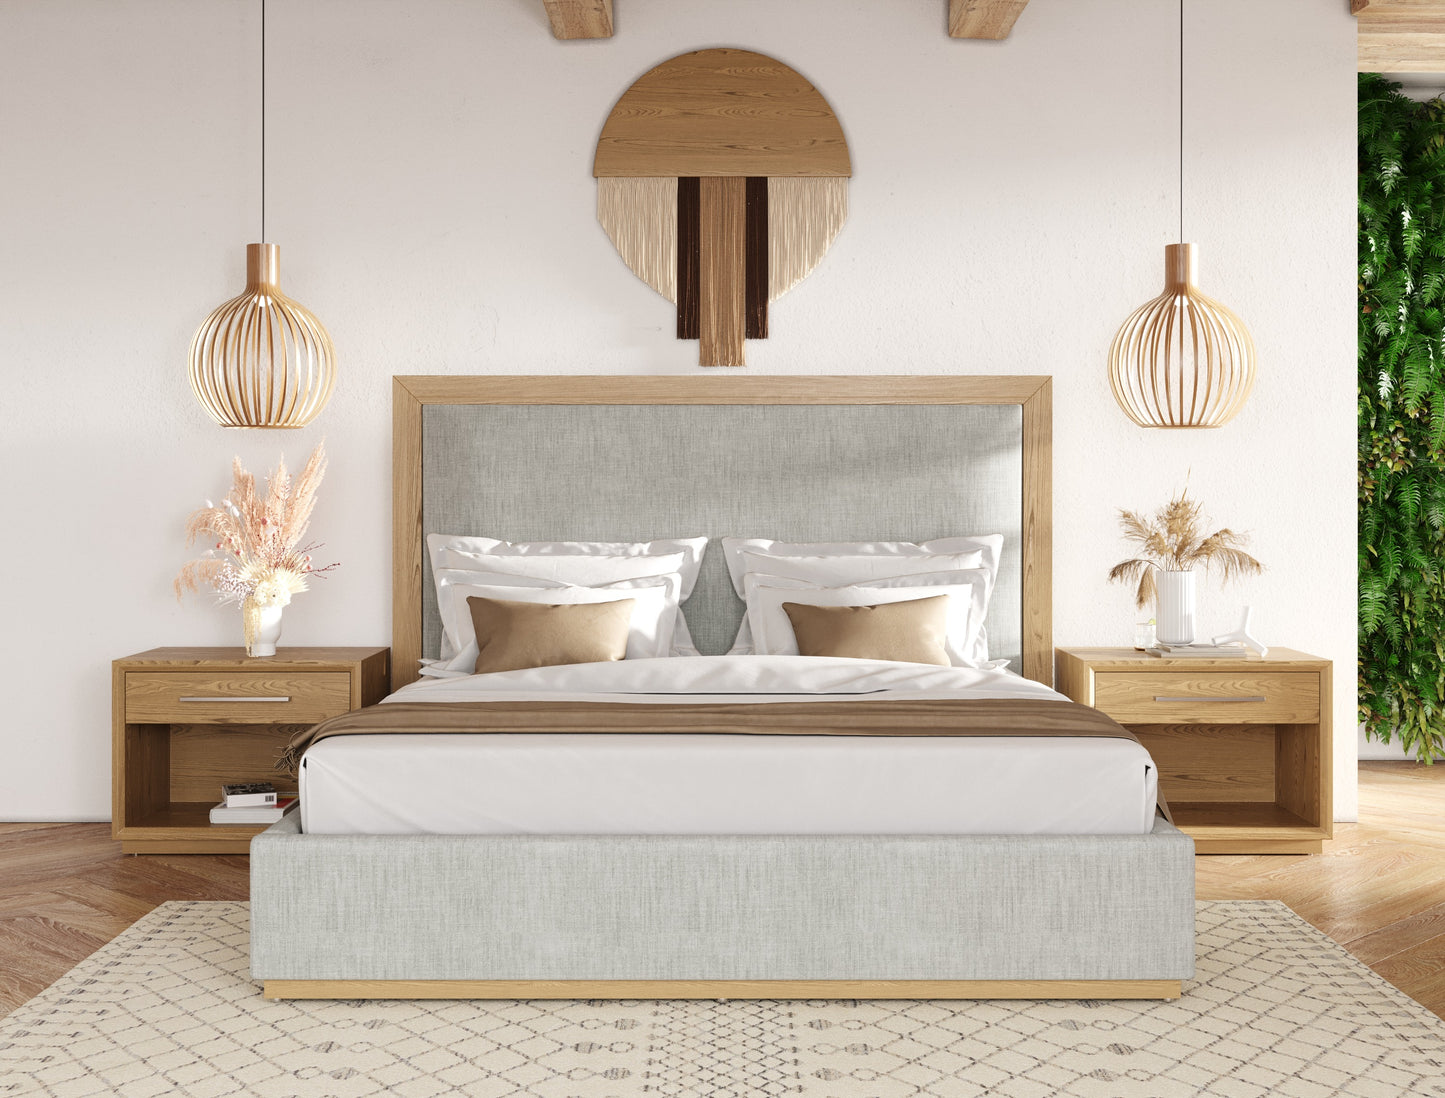 Nova Domus Santa Barbara - Modern Grey Fabric + Natural Bed